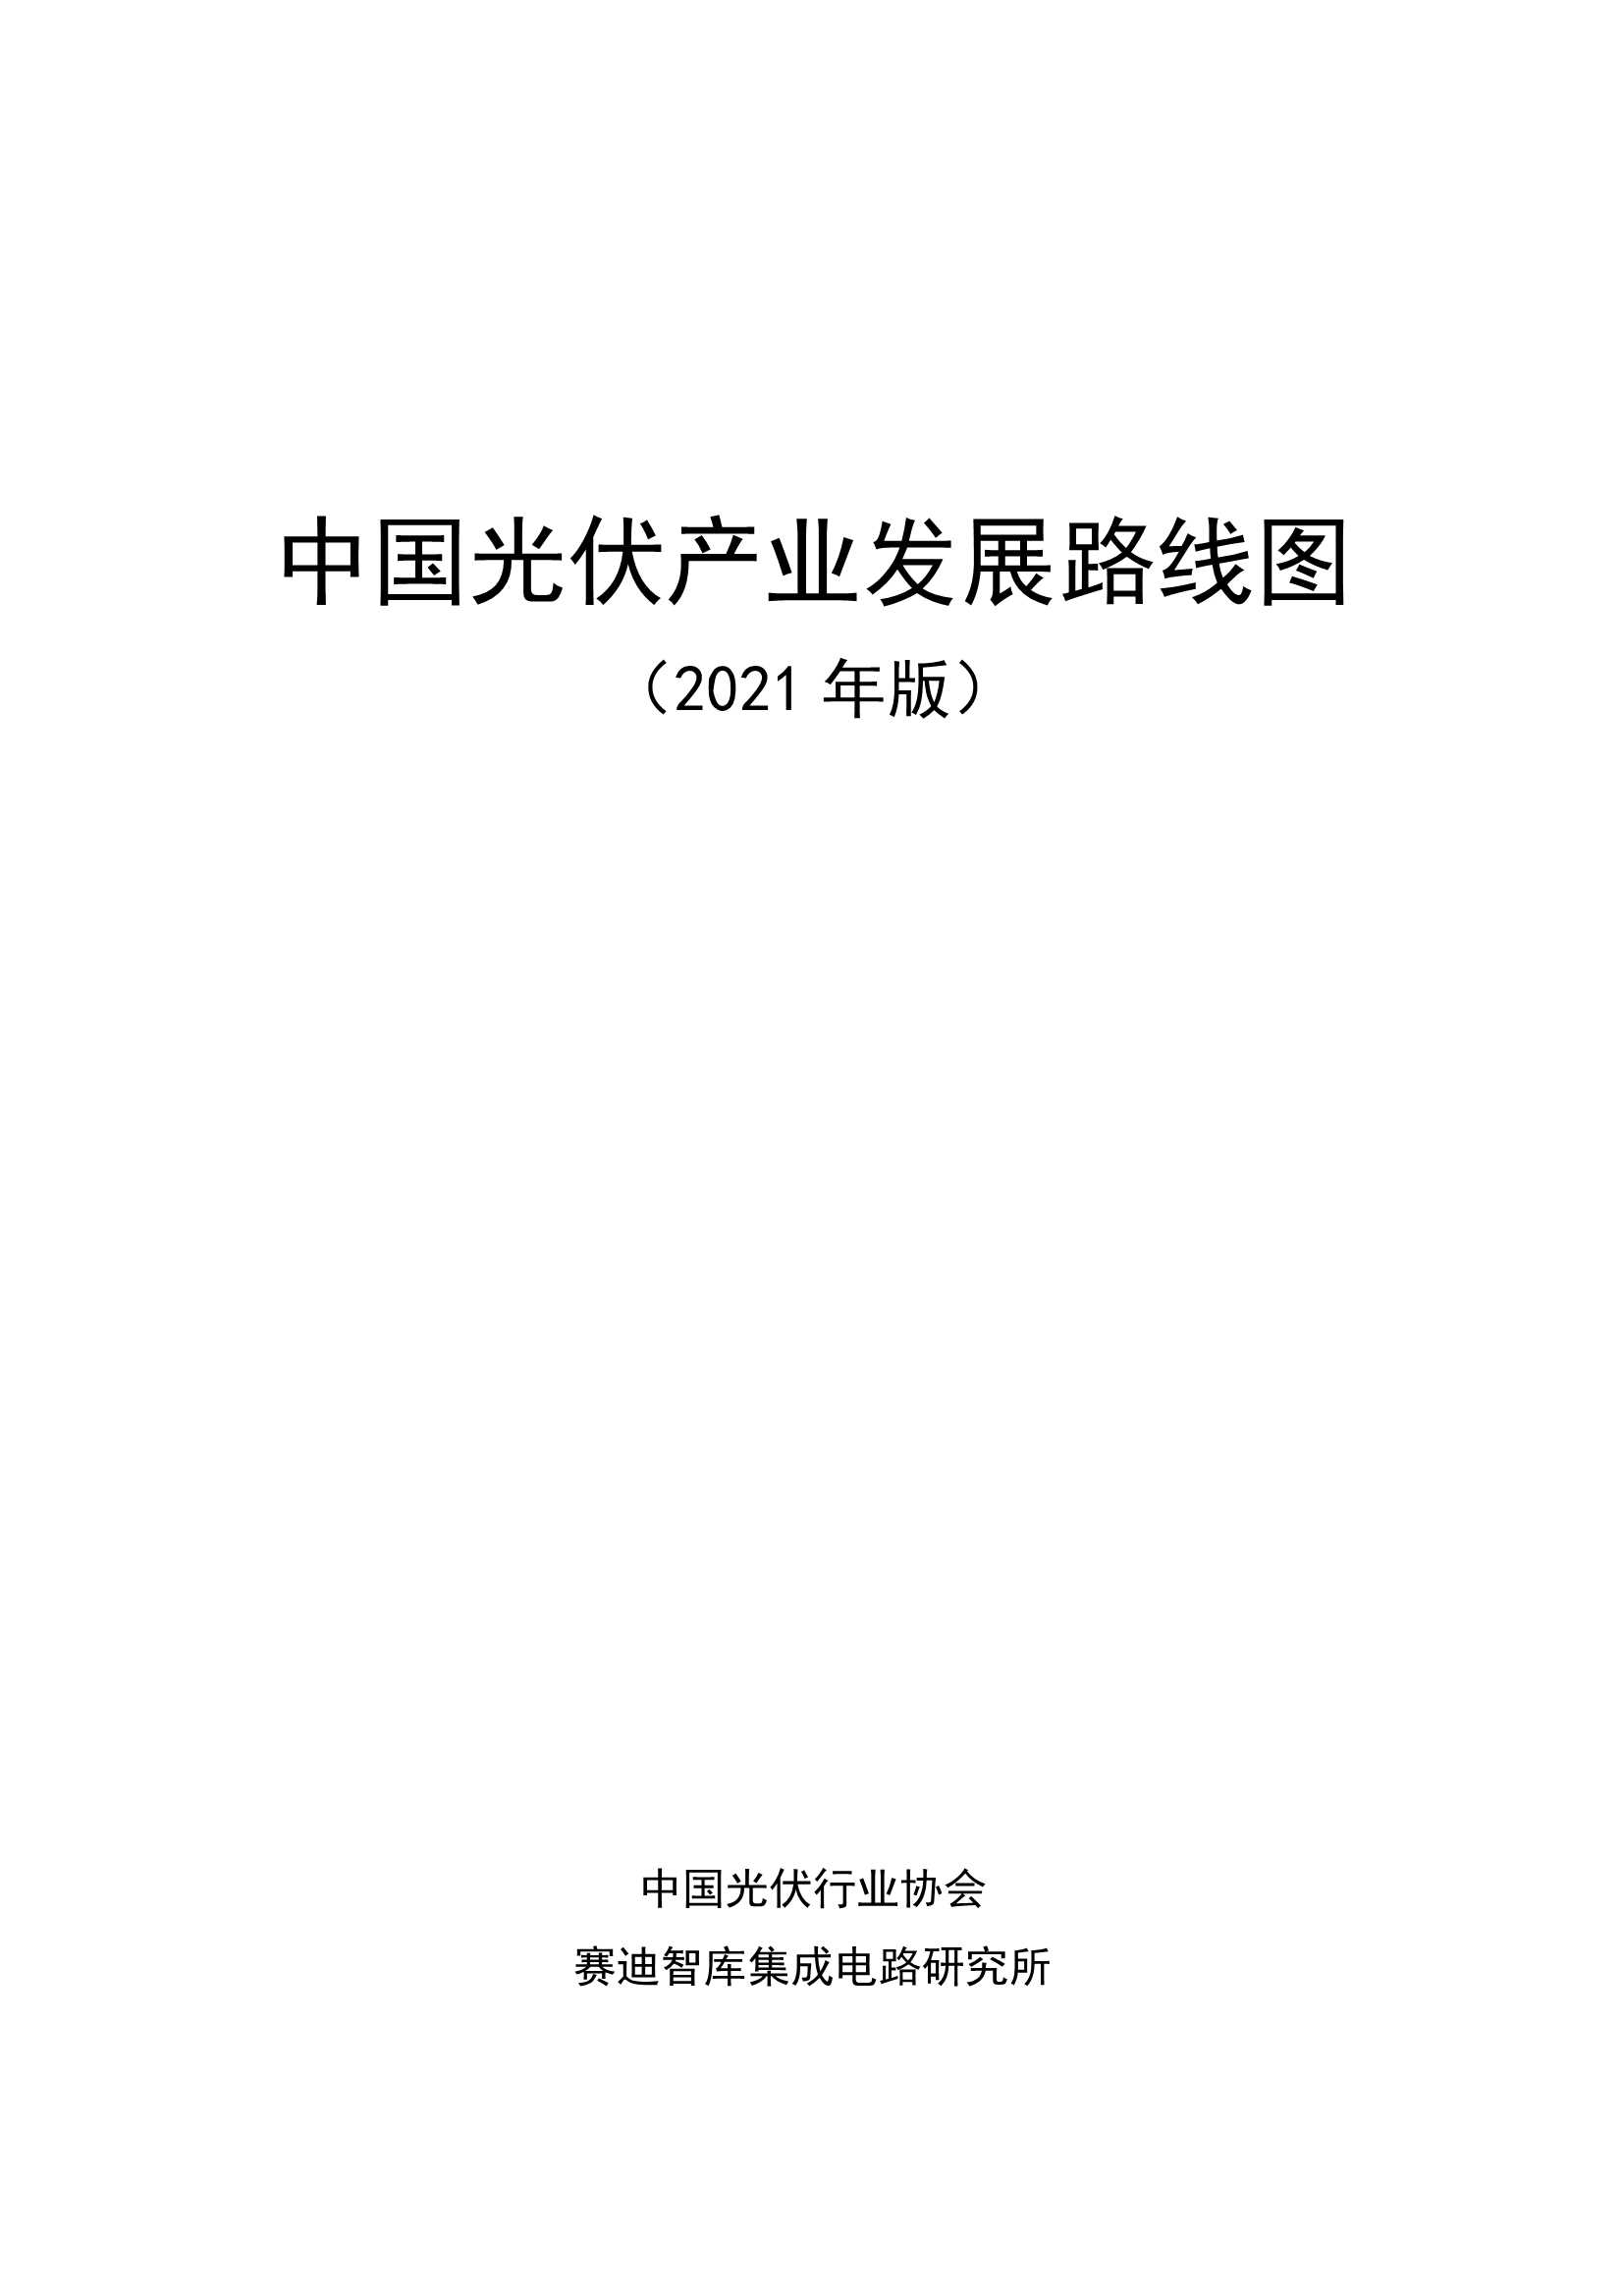 赛迪-2021年中国光伏产业发展路线图-2022.03-67页